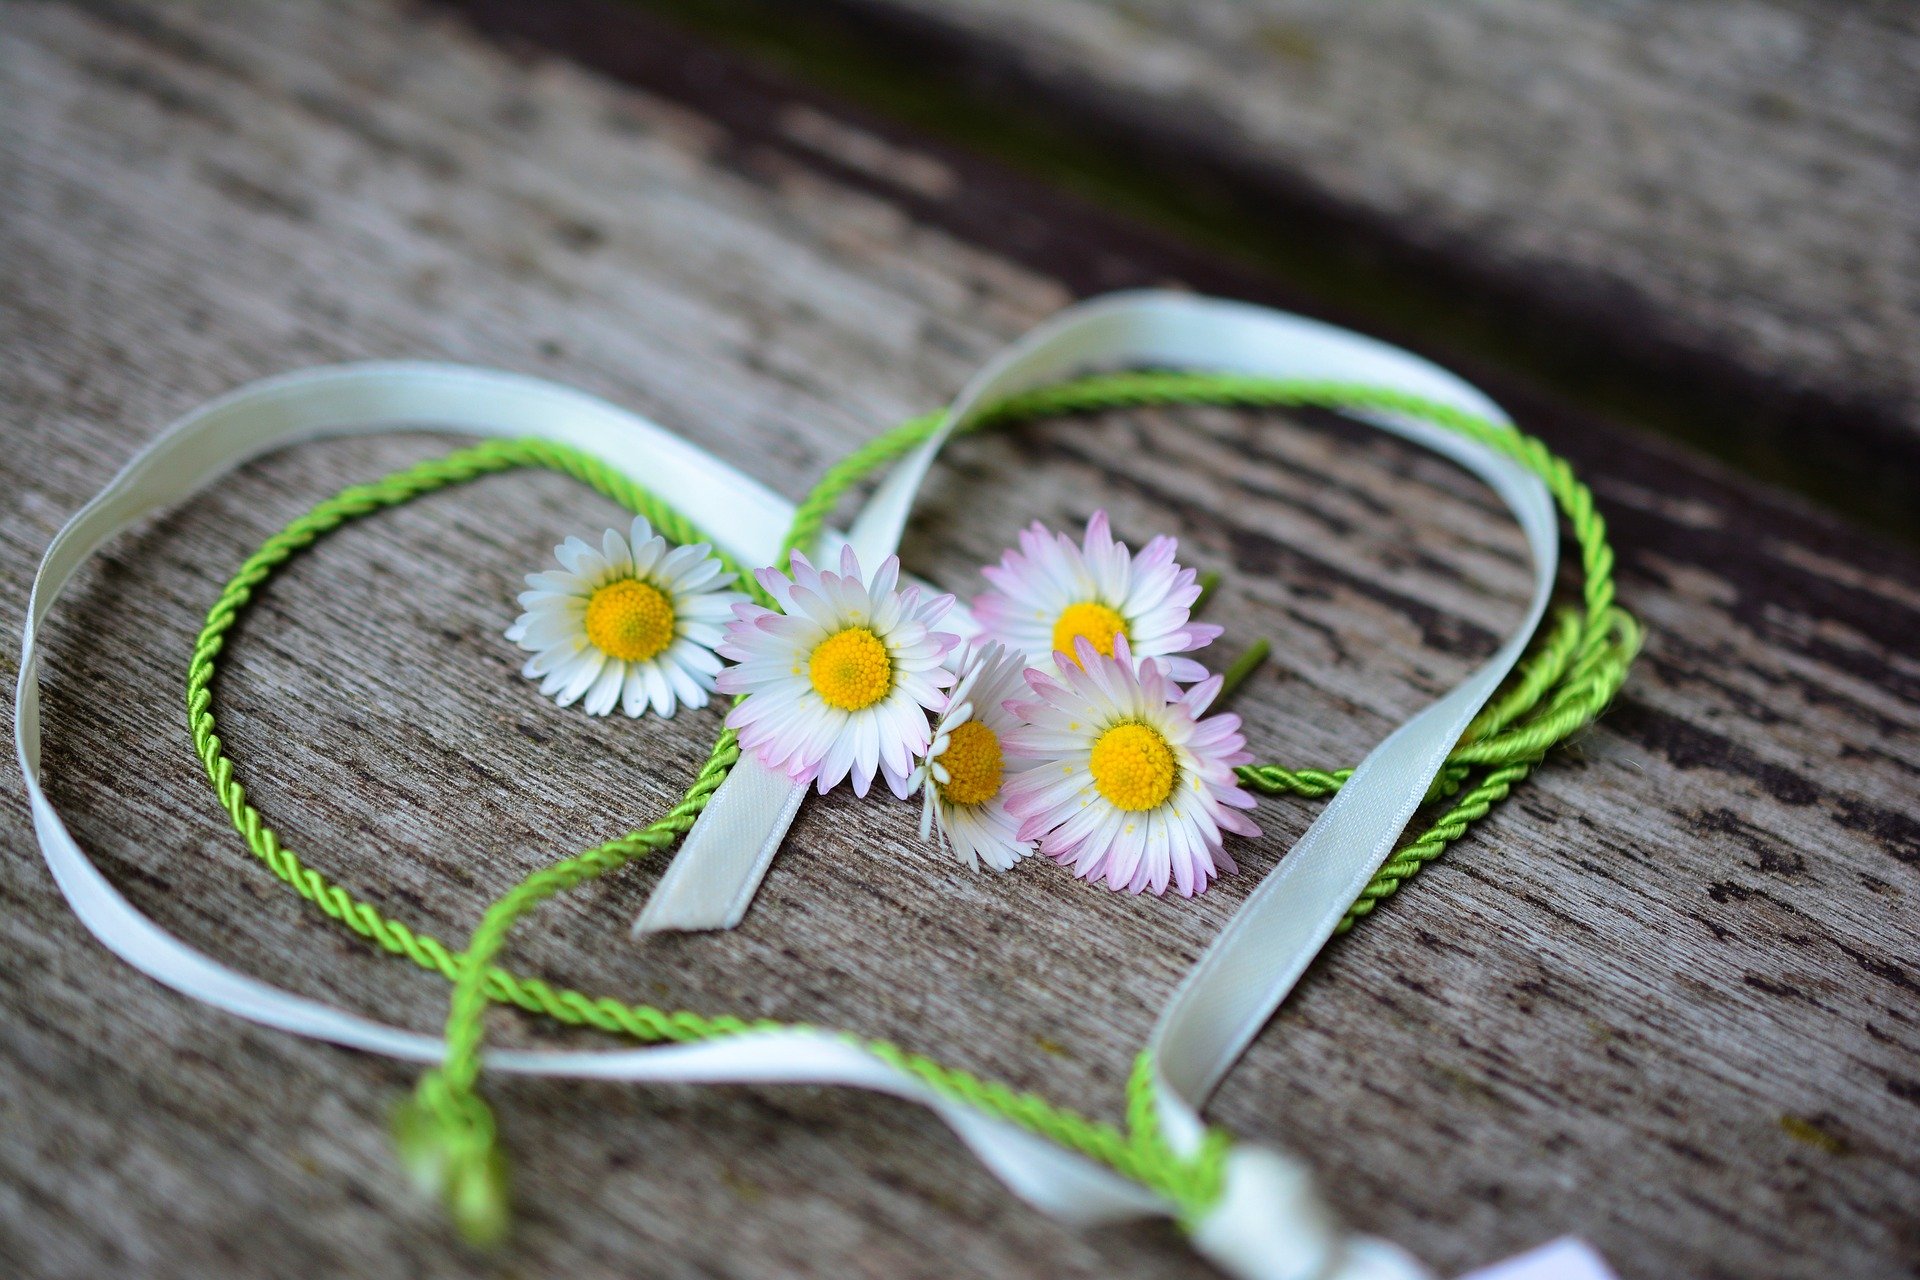 Oubliez les roses, offrez des fleurs plus écologiques pour la Saint-Valentin. © Congerdesign, Pixabay, DP